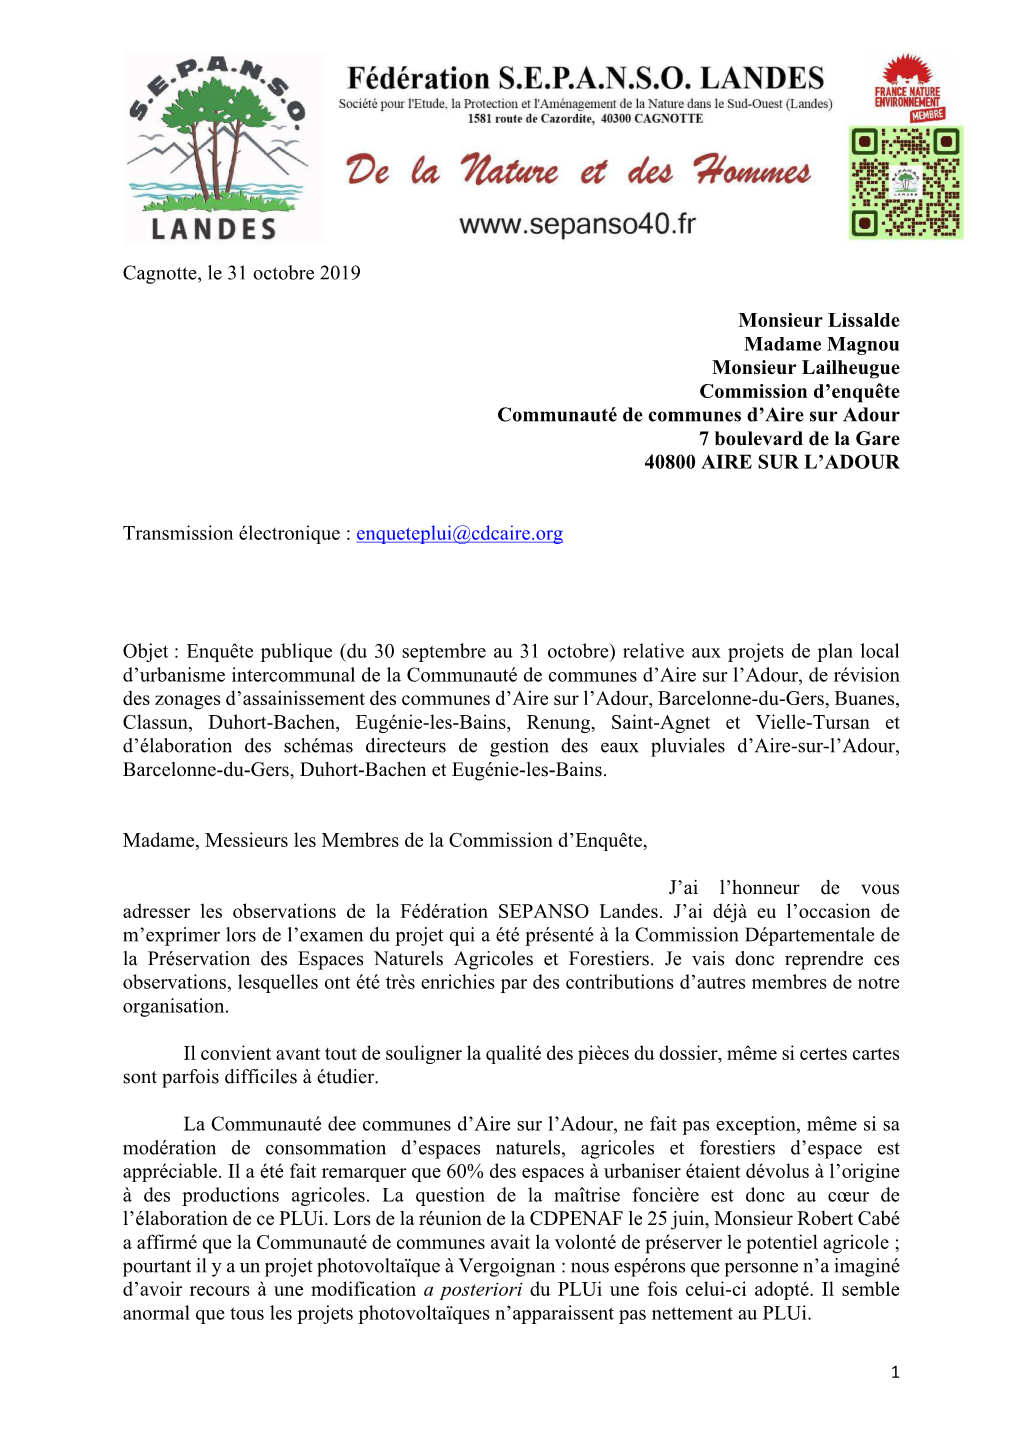 Cagnotte, Le 31 Octobre 2019 Monsieur Lissalde Madame Magnou Monsieur Lailheugue Commission D'enquête Communauté De Communes